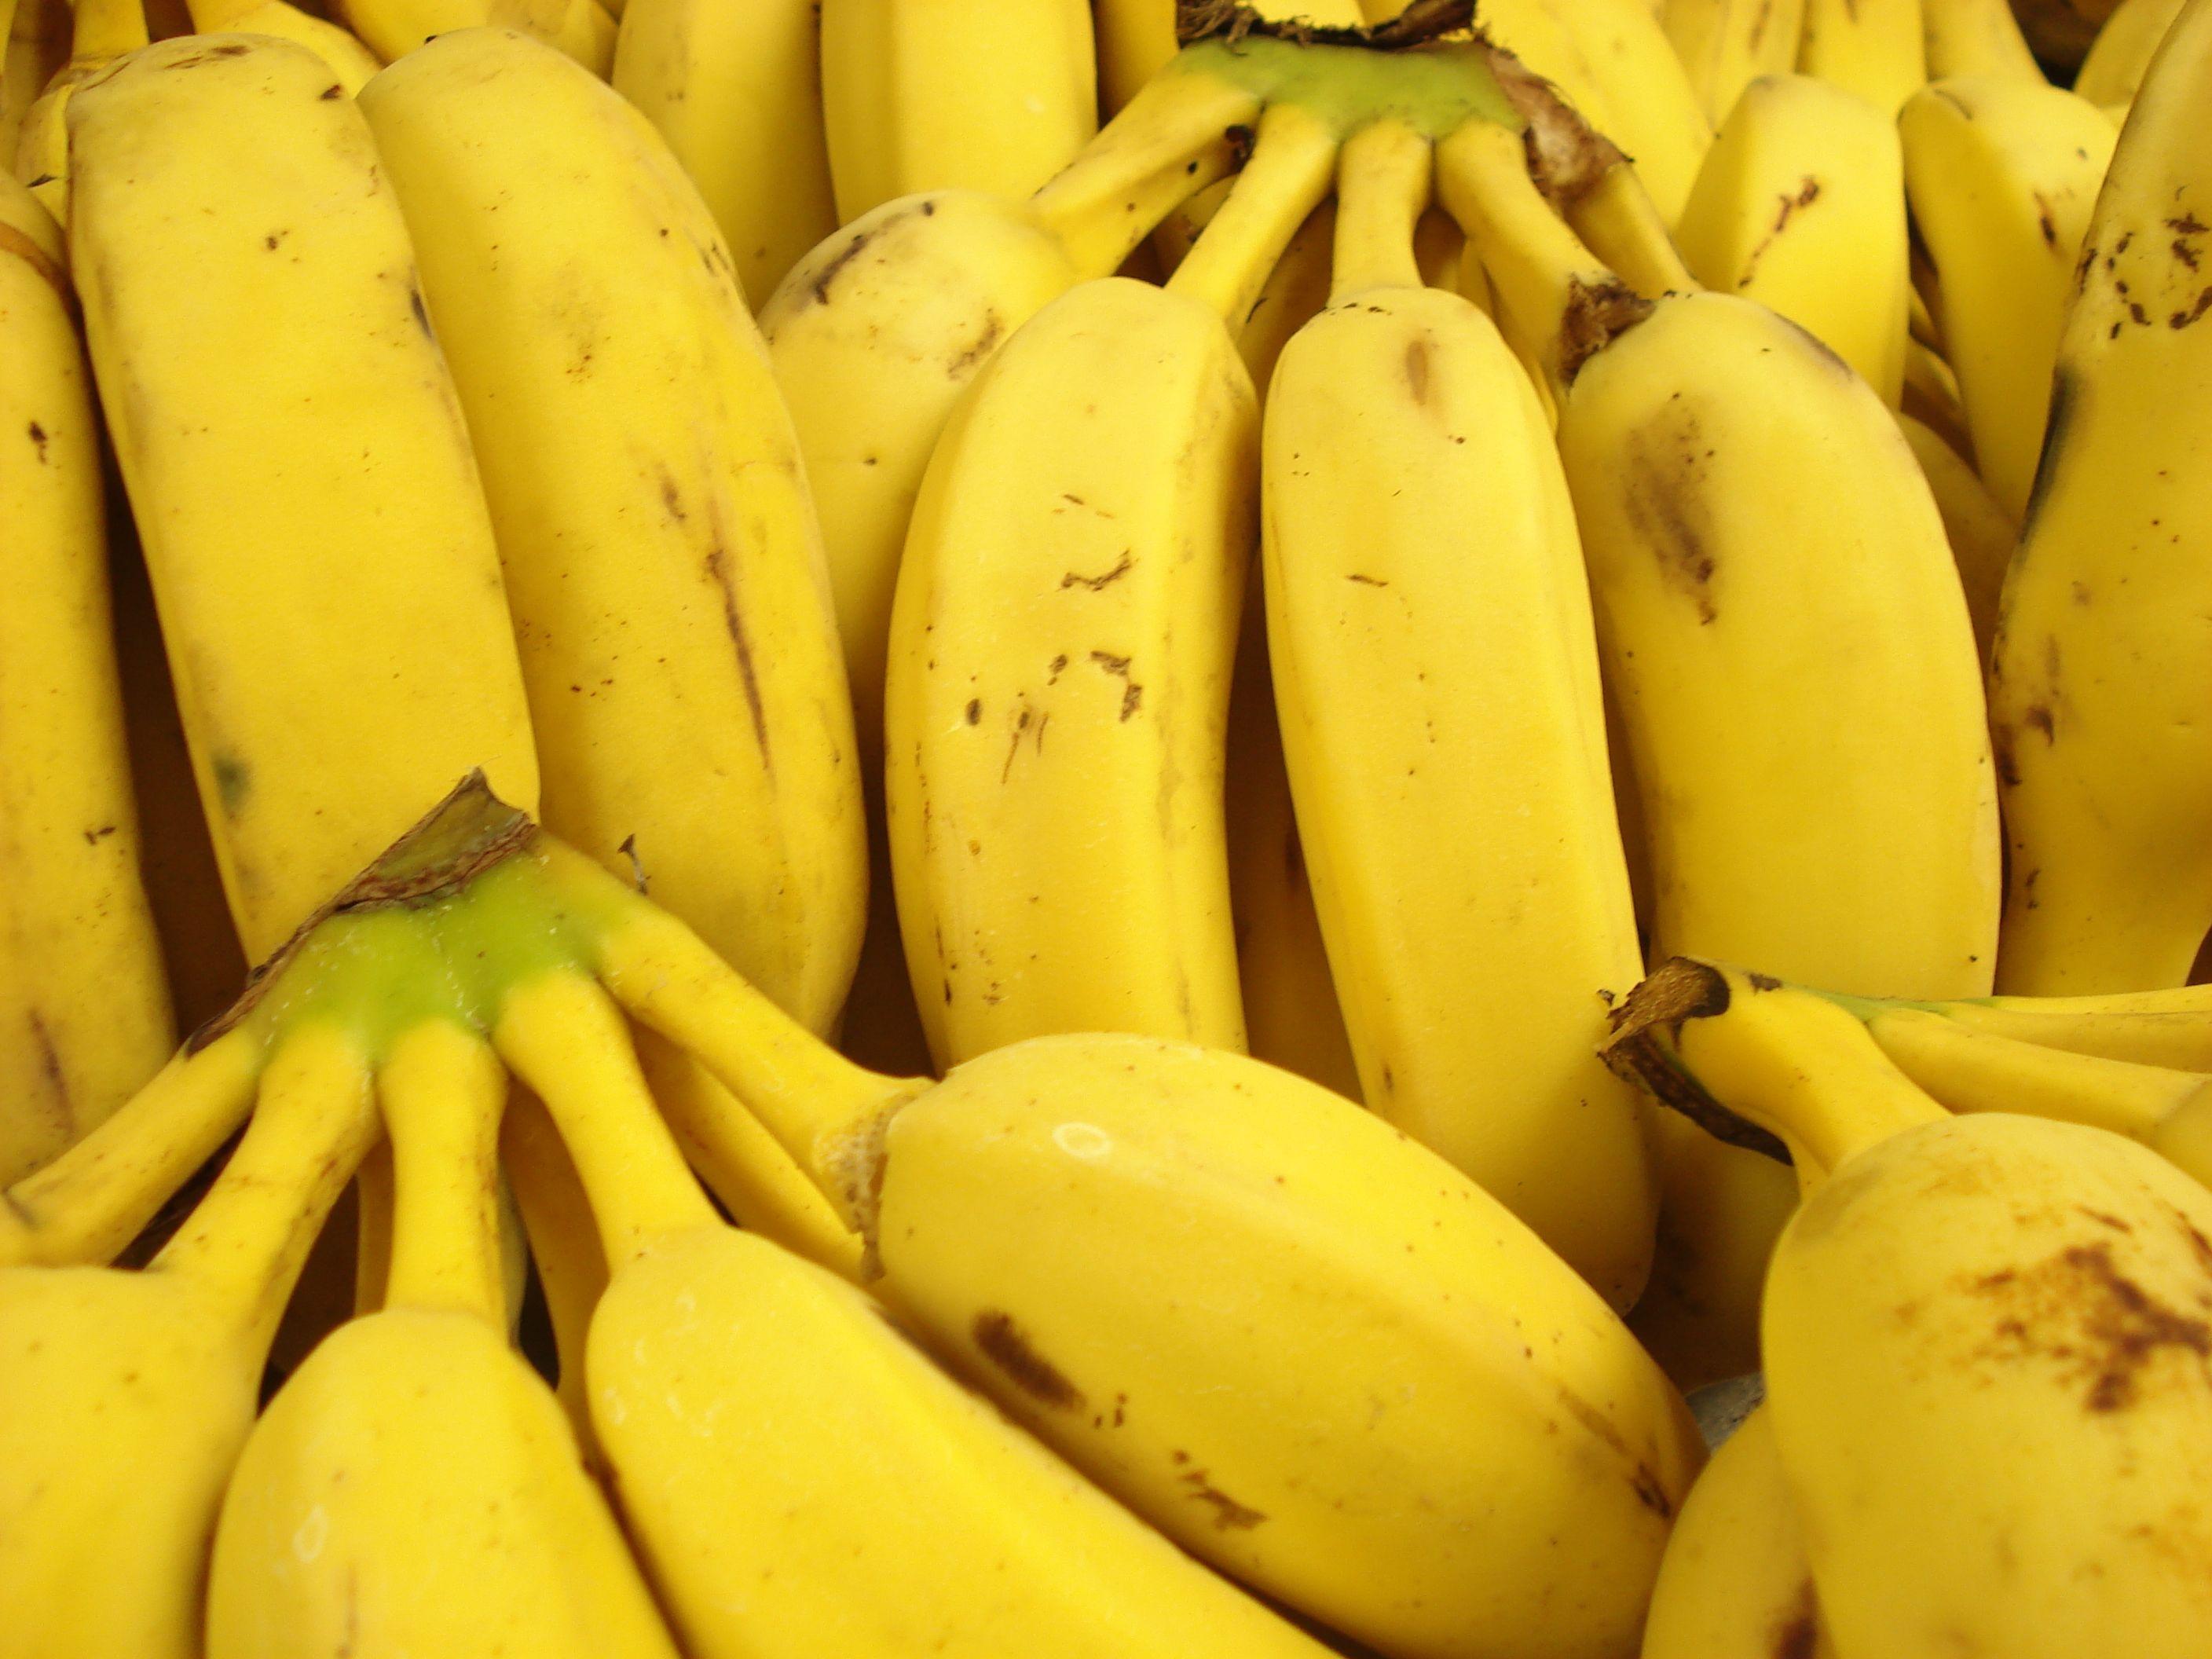 Download wallpaper: Fruits, Bananas, download photo, banana